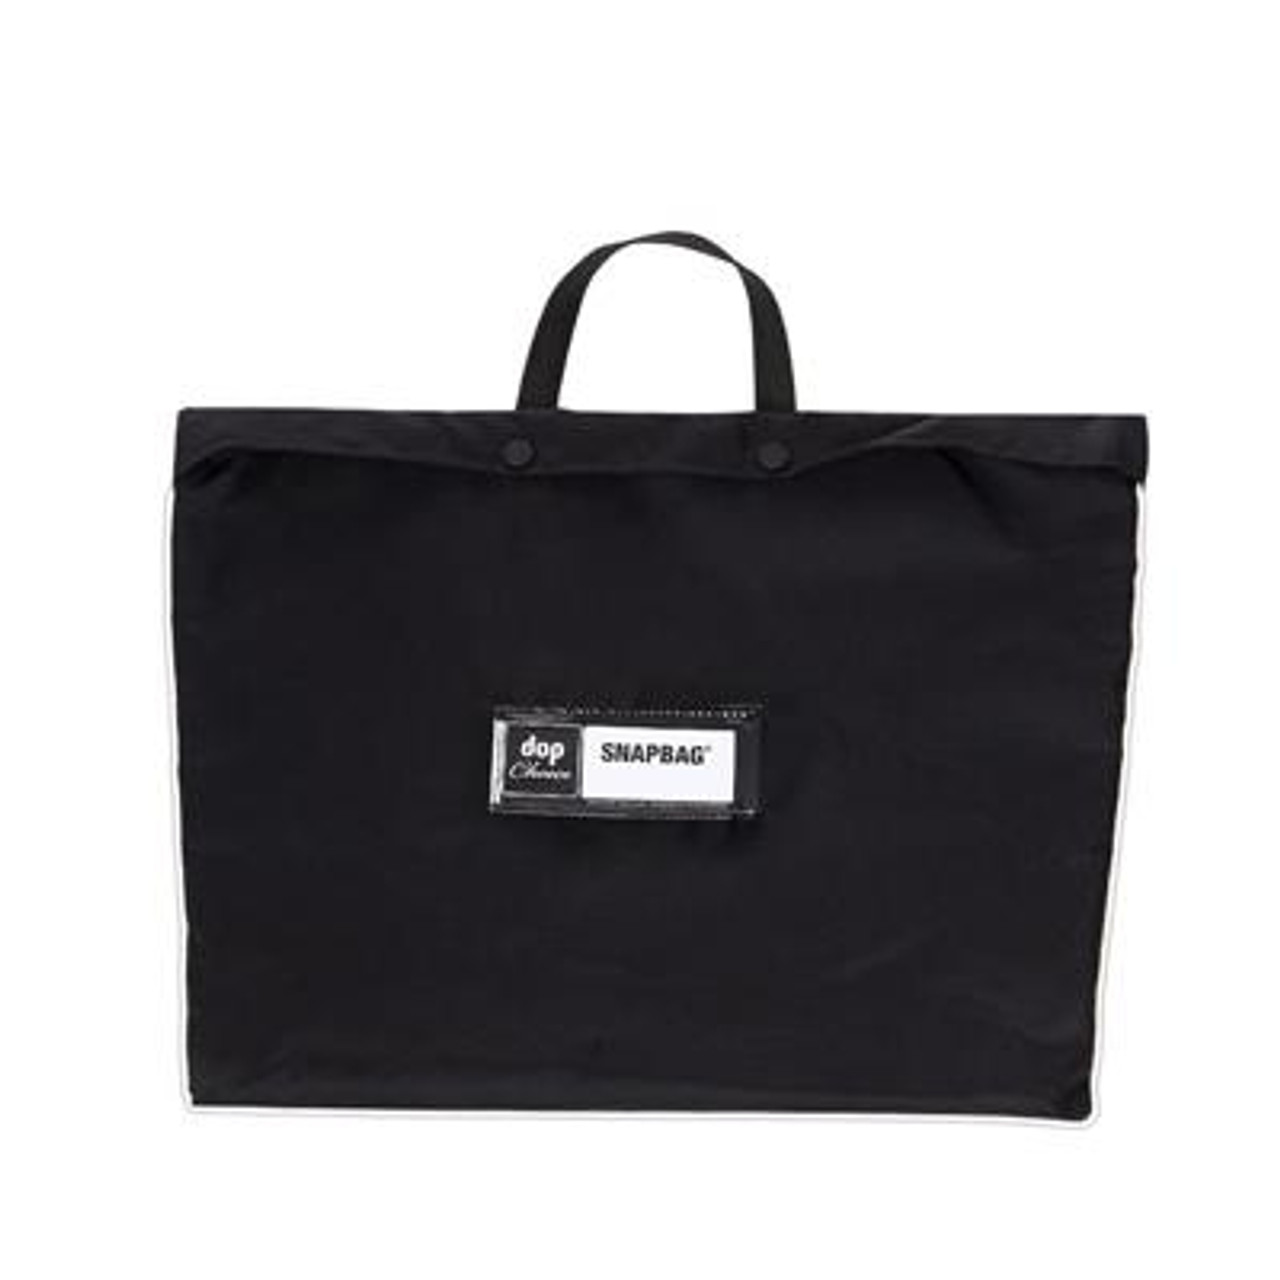 Astera SXF44-BAG Bag for the Astera SXF44 SnapBox (SXF44-BAG)